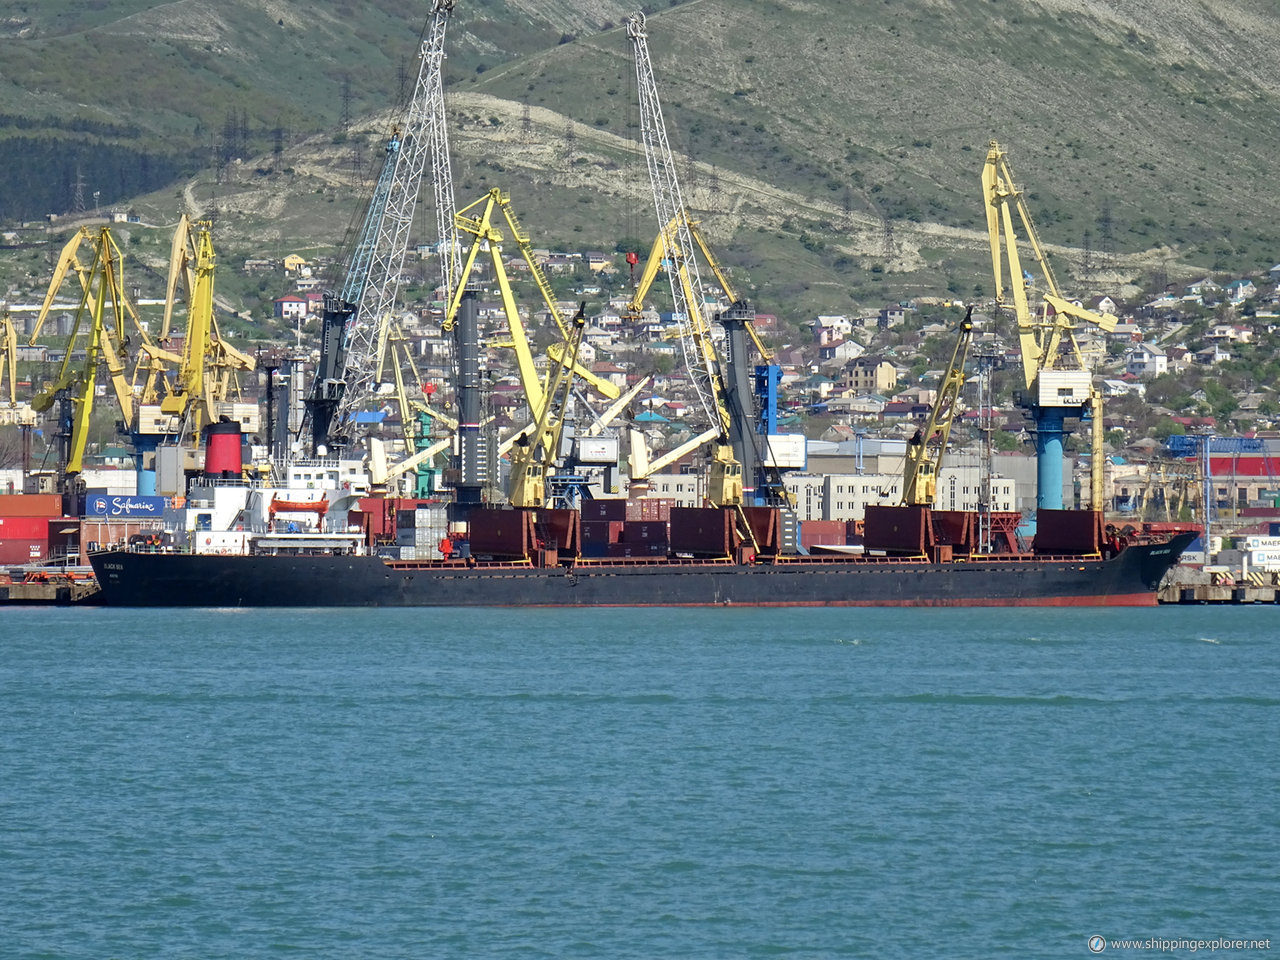 MV Black Sea